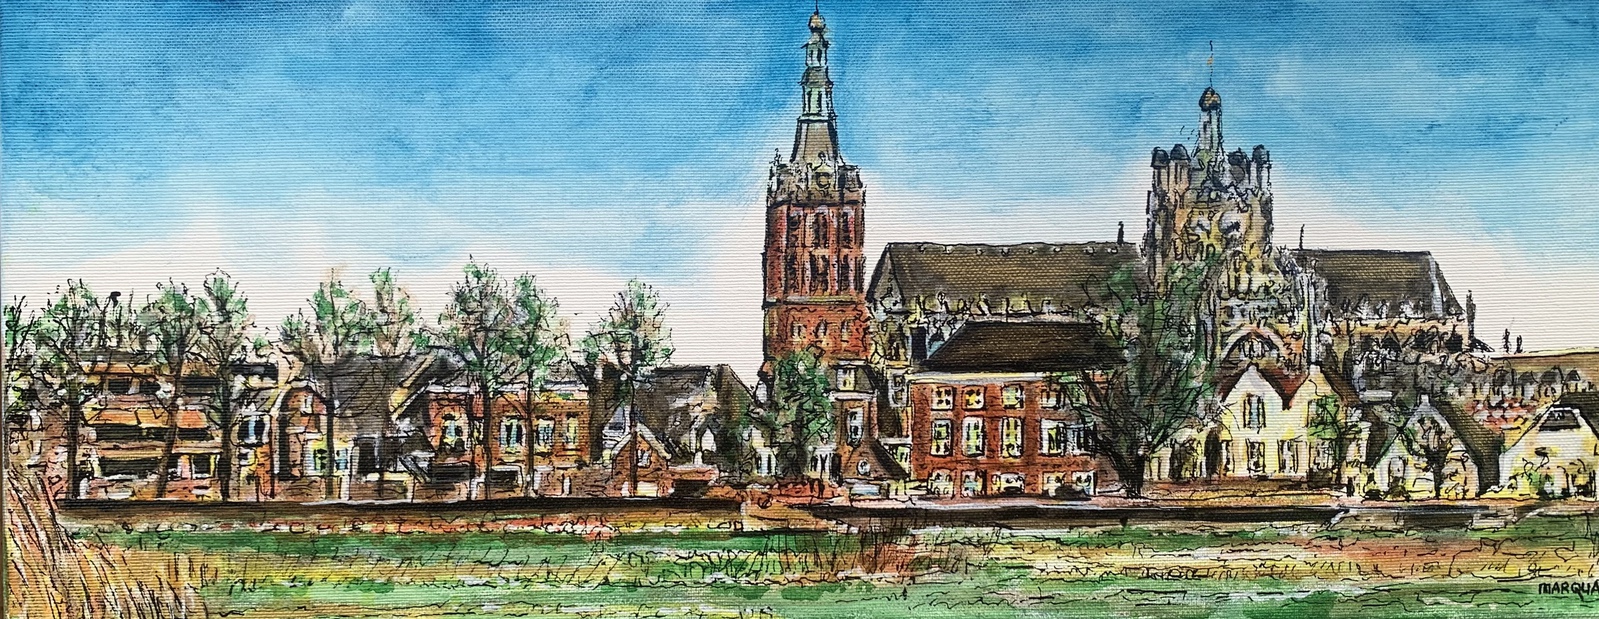 Sint Jan vanuit Bossche Broek MARQUA269 